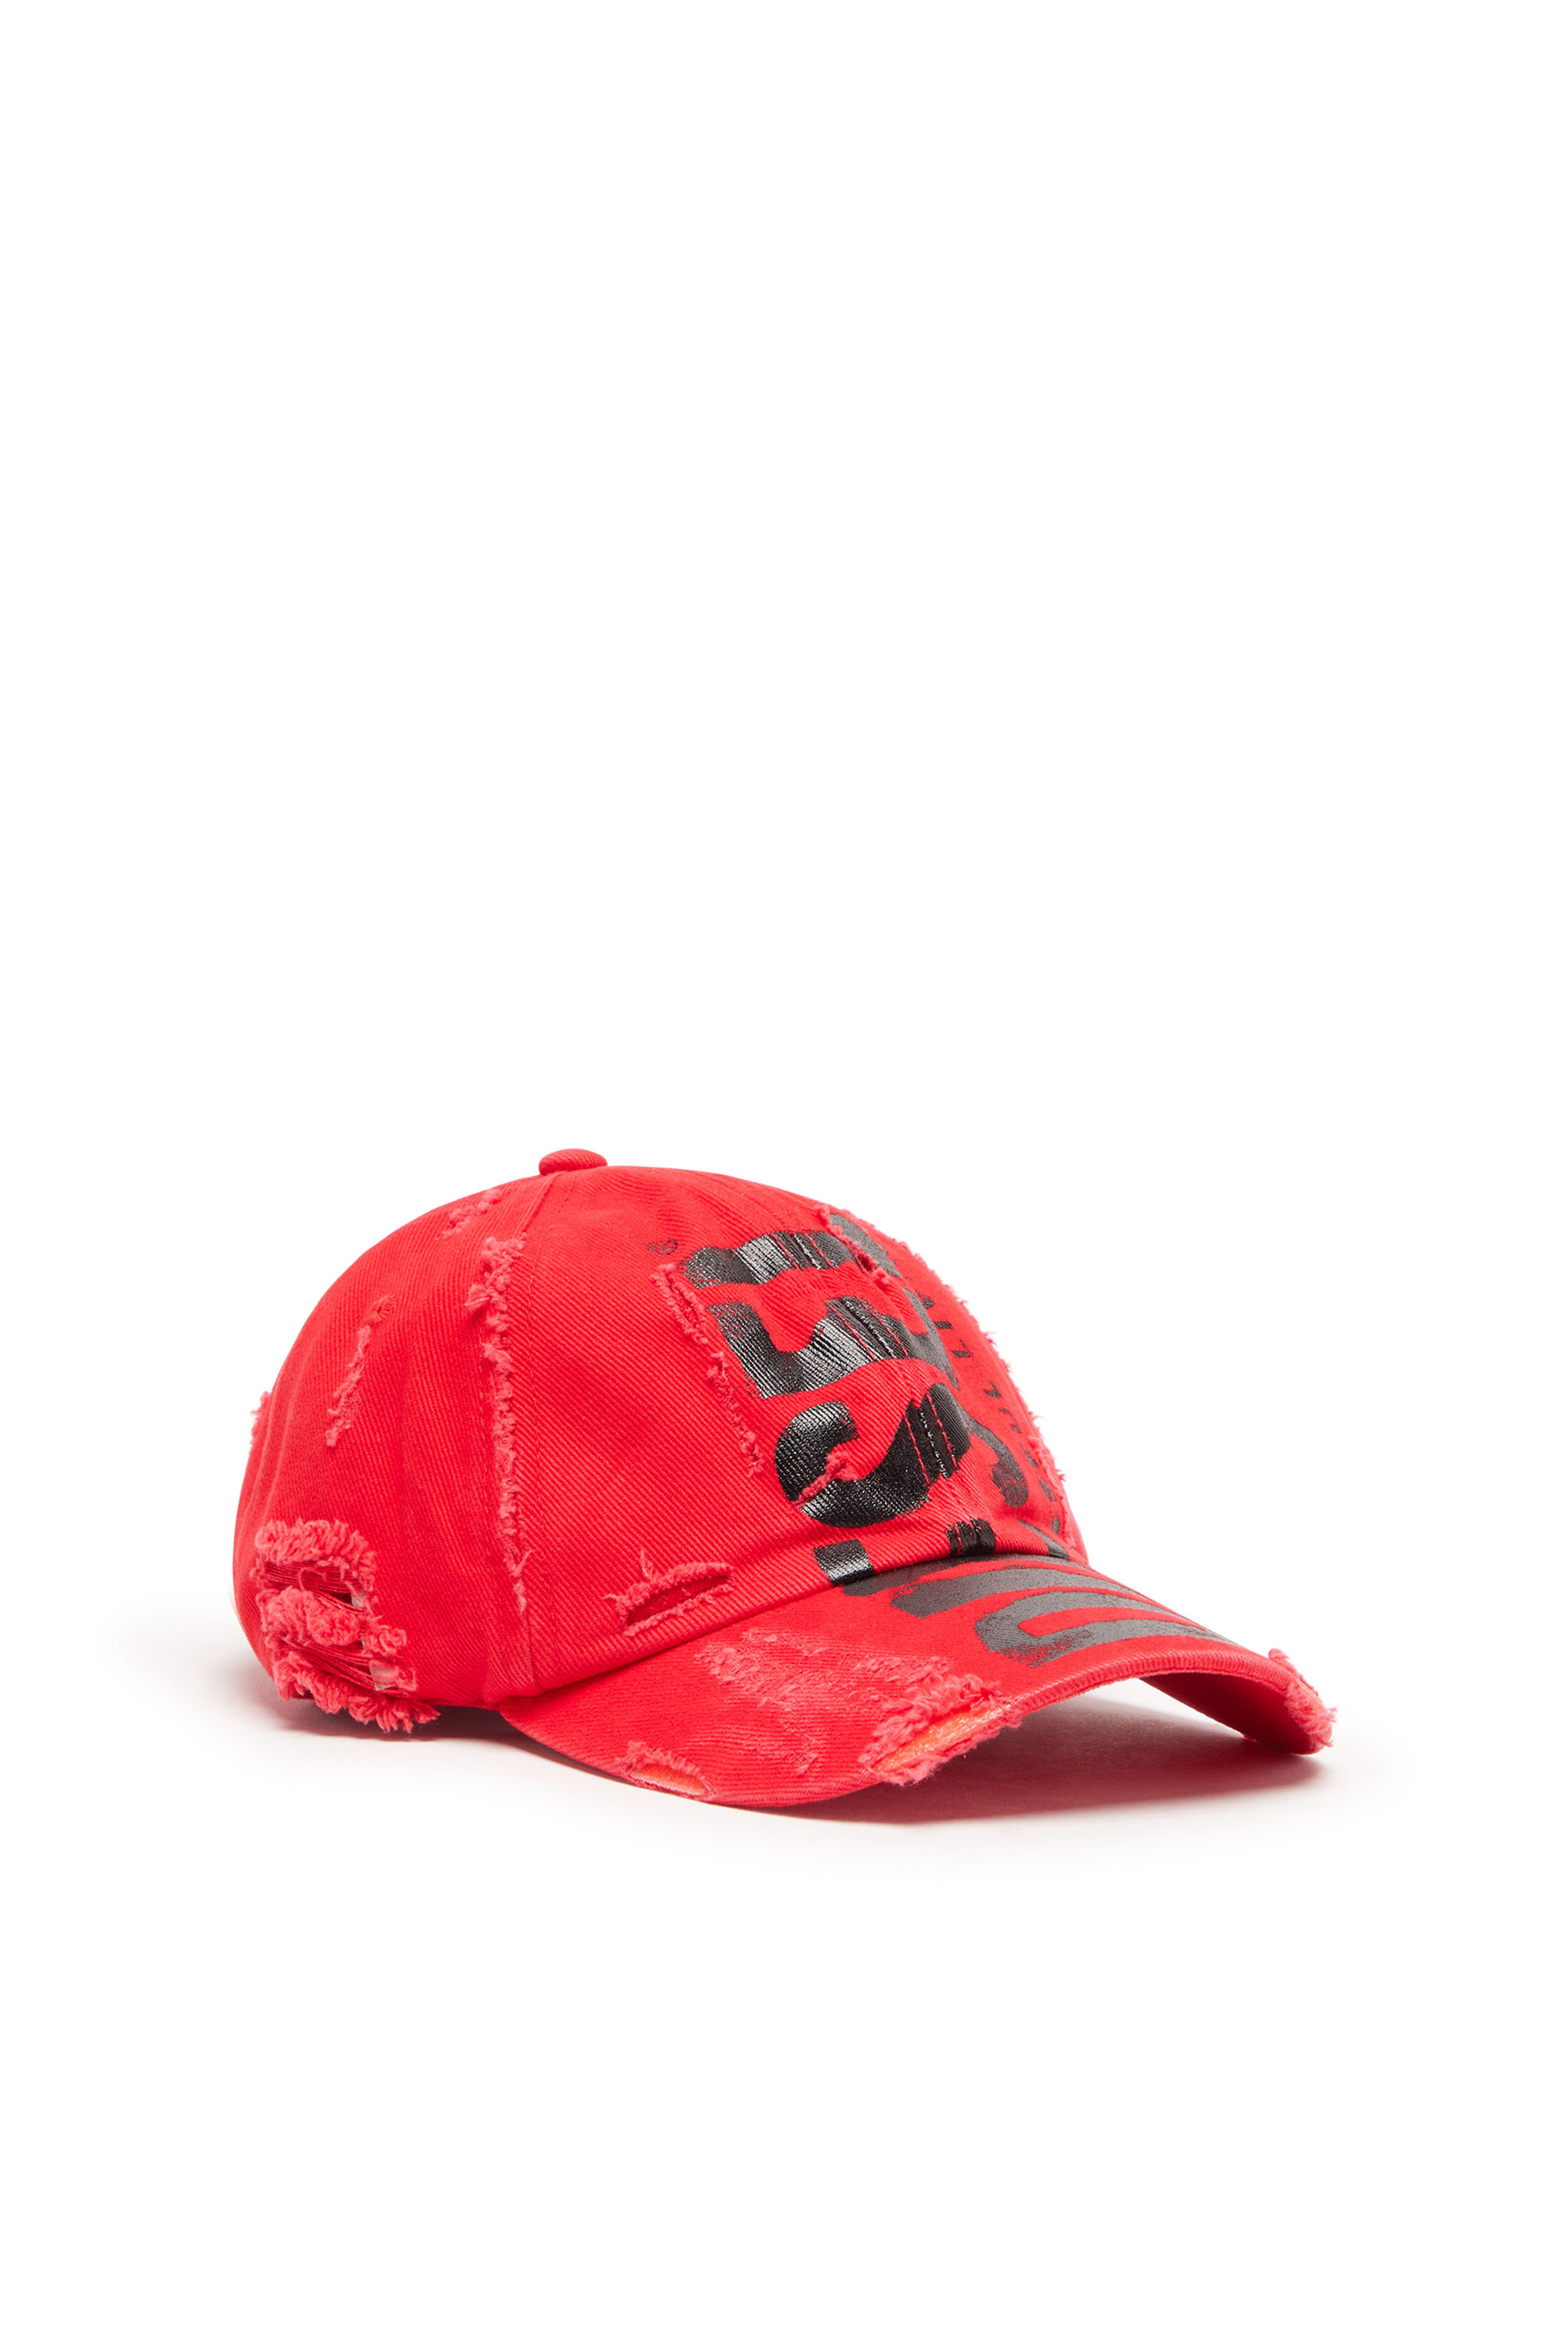 Diesel - Berretto da baseball con scritta Diesel - Cappelli - Unisex - Rosso